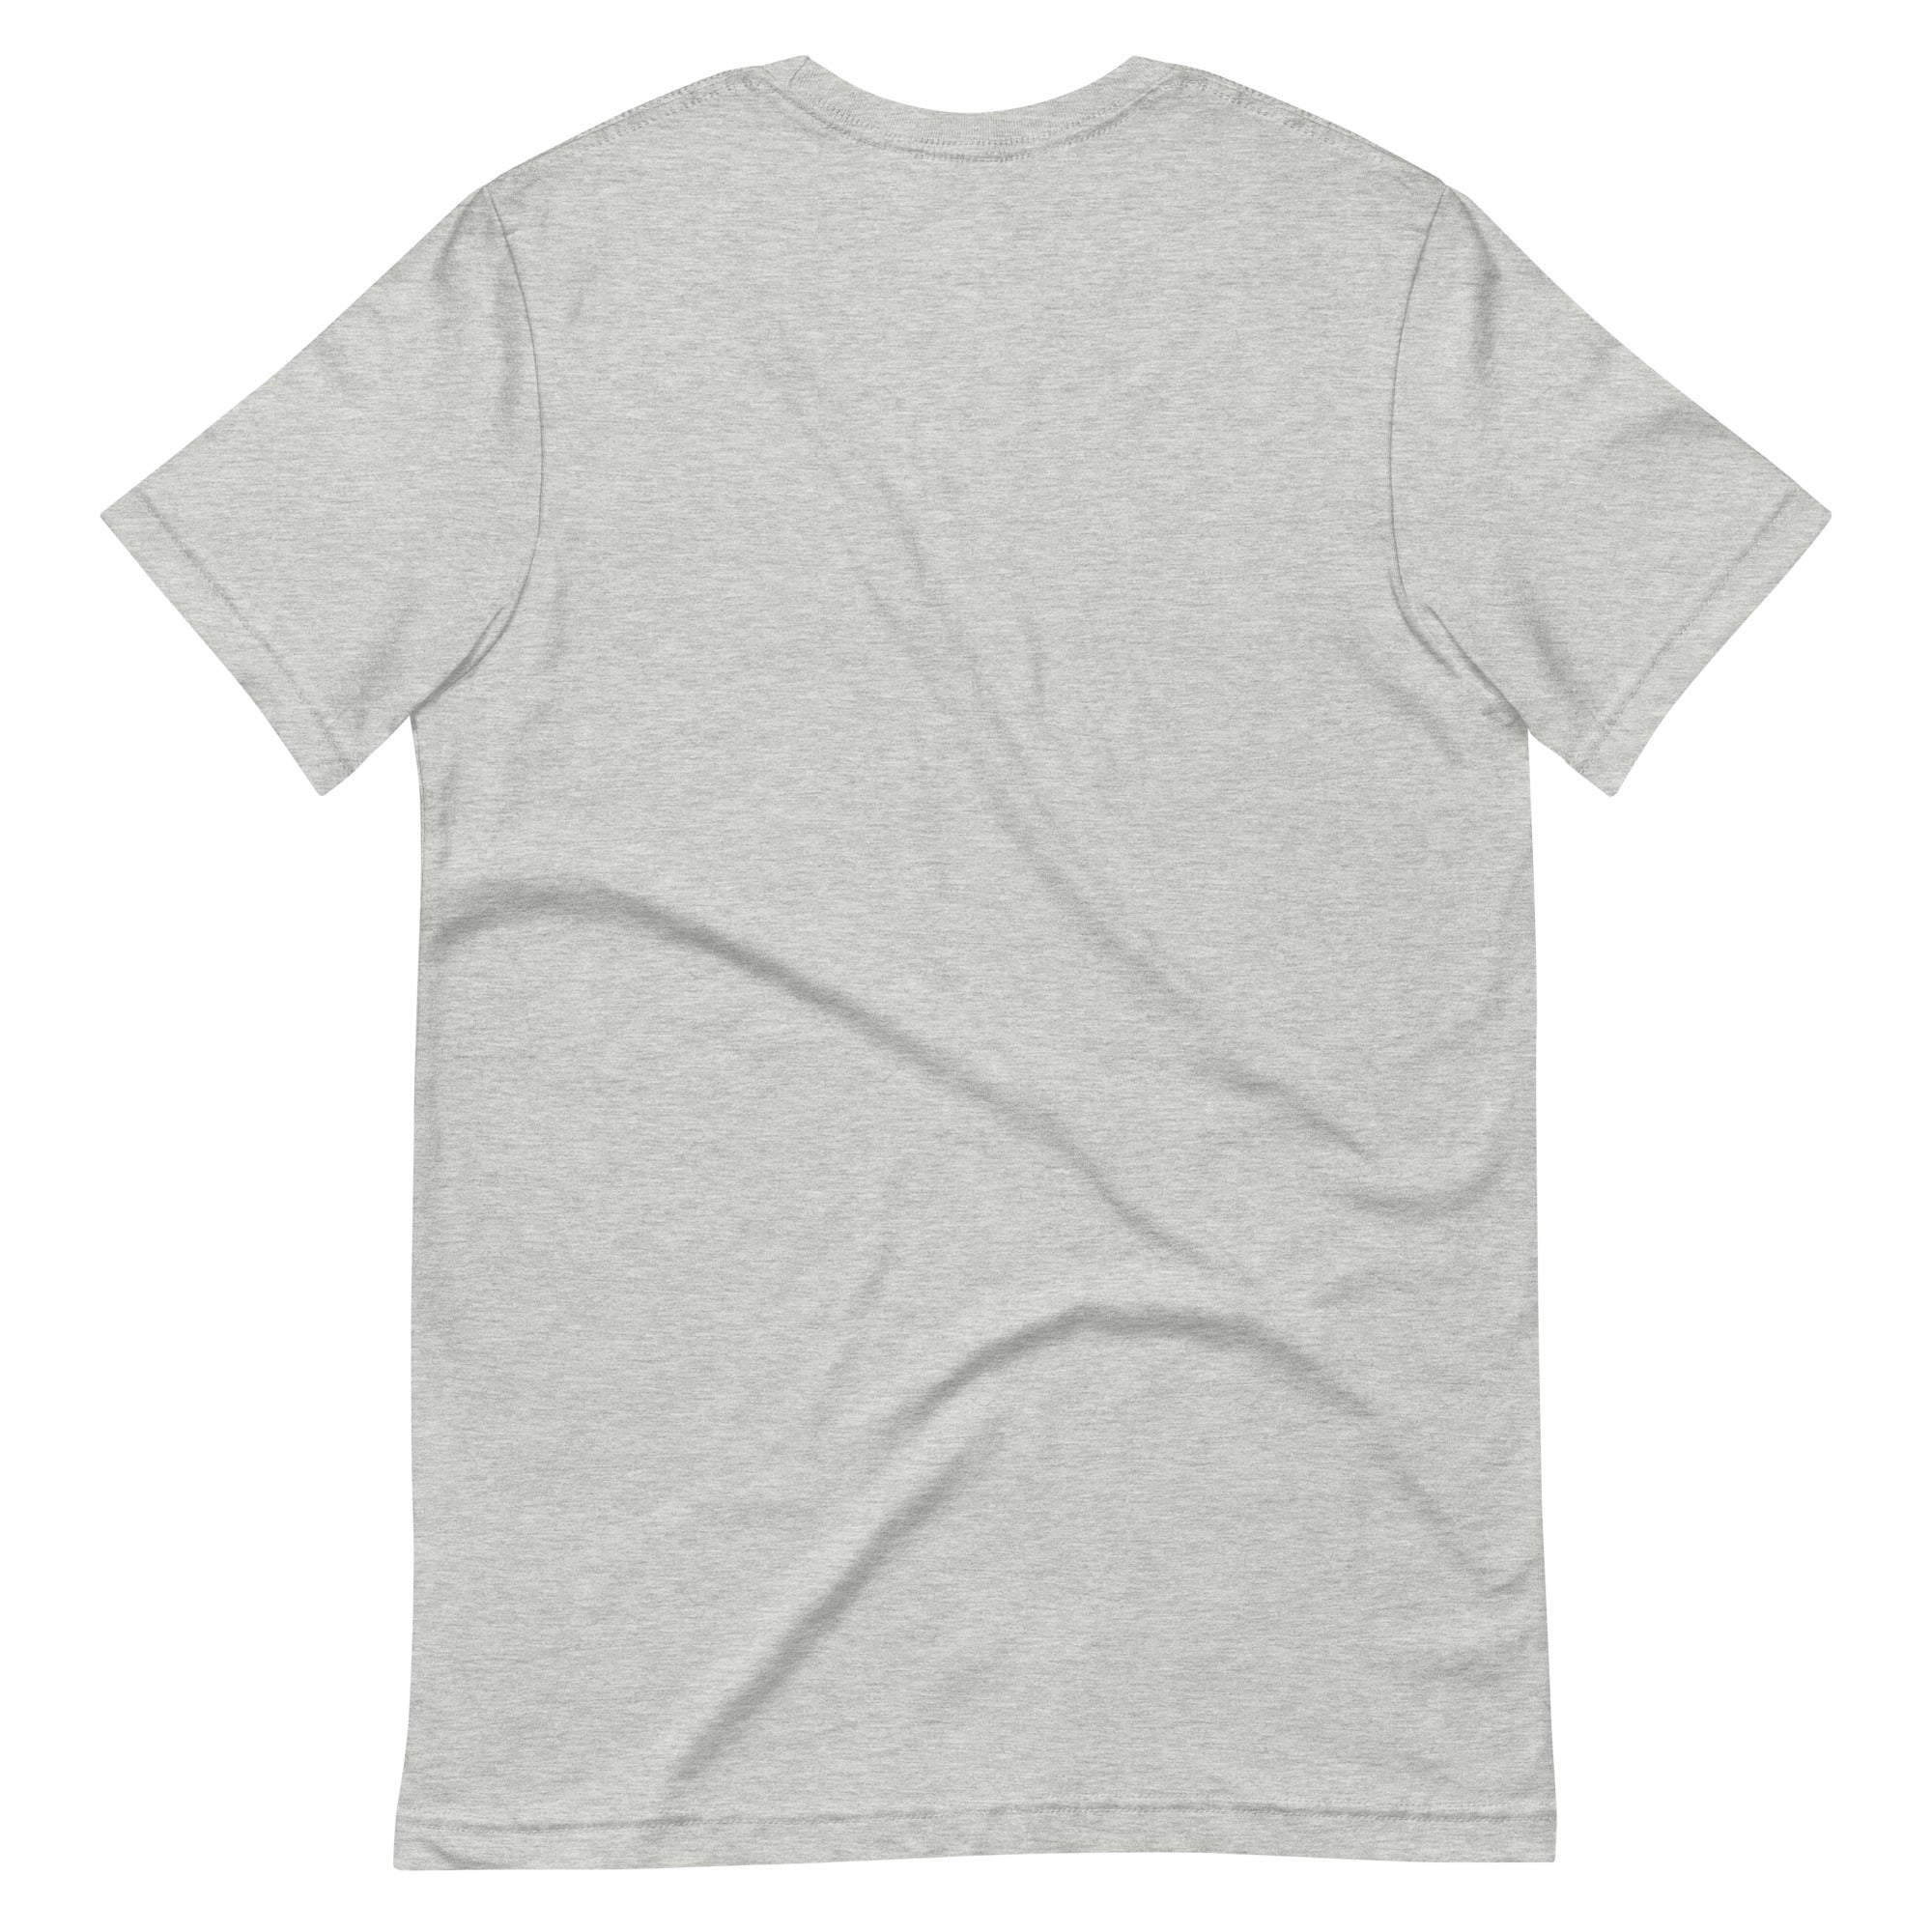 Arches T-Shirt (Grey) - Midtown | Phoenix, AZ